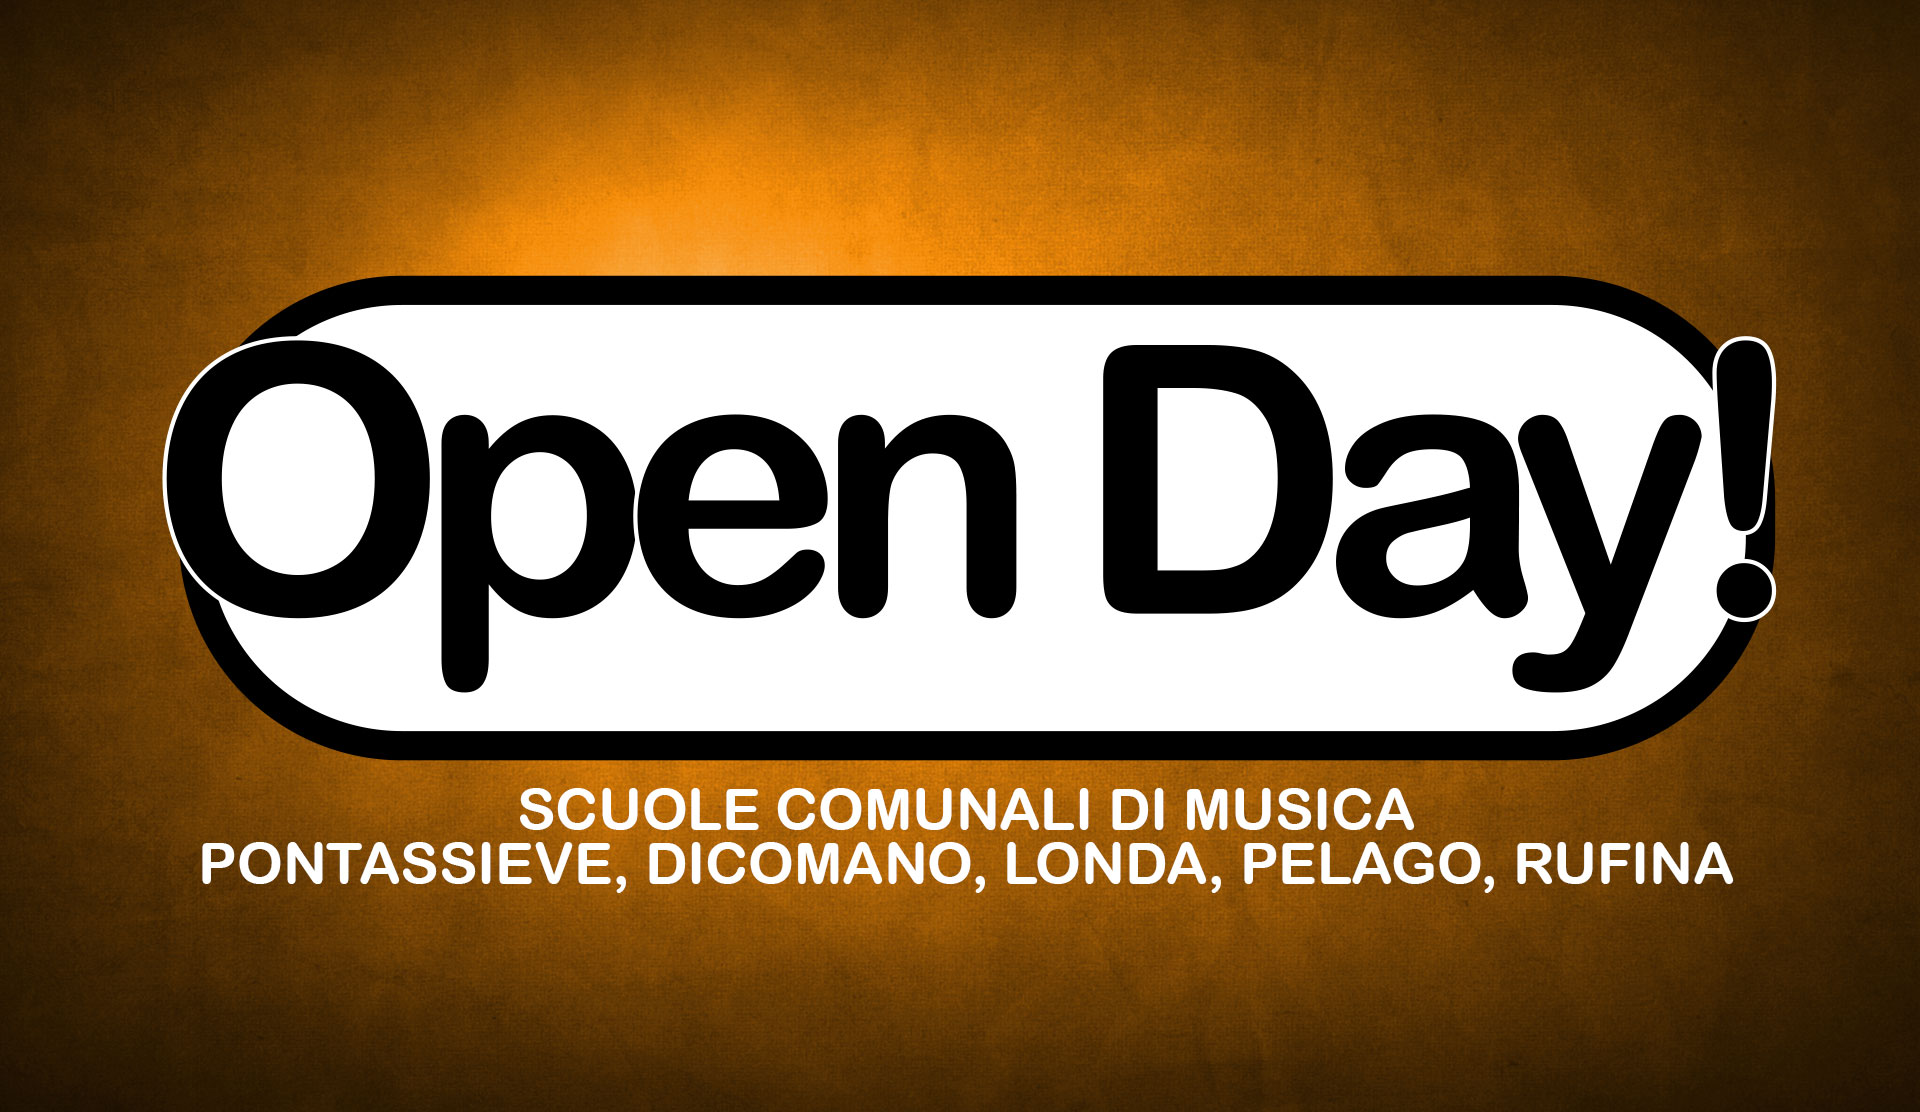 Open Day Scuola Comunale di Musica Pontassieve, Dicomano, Londa, Pelago, Rufina 2015